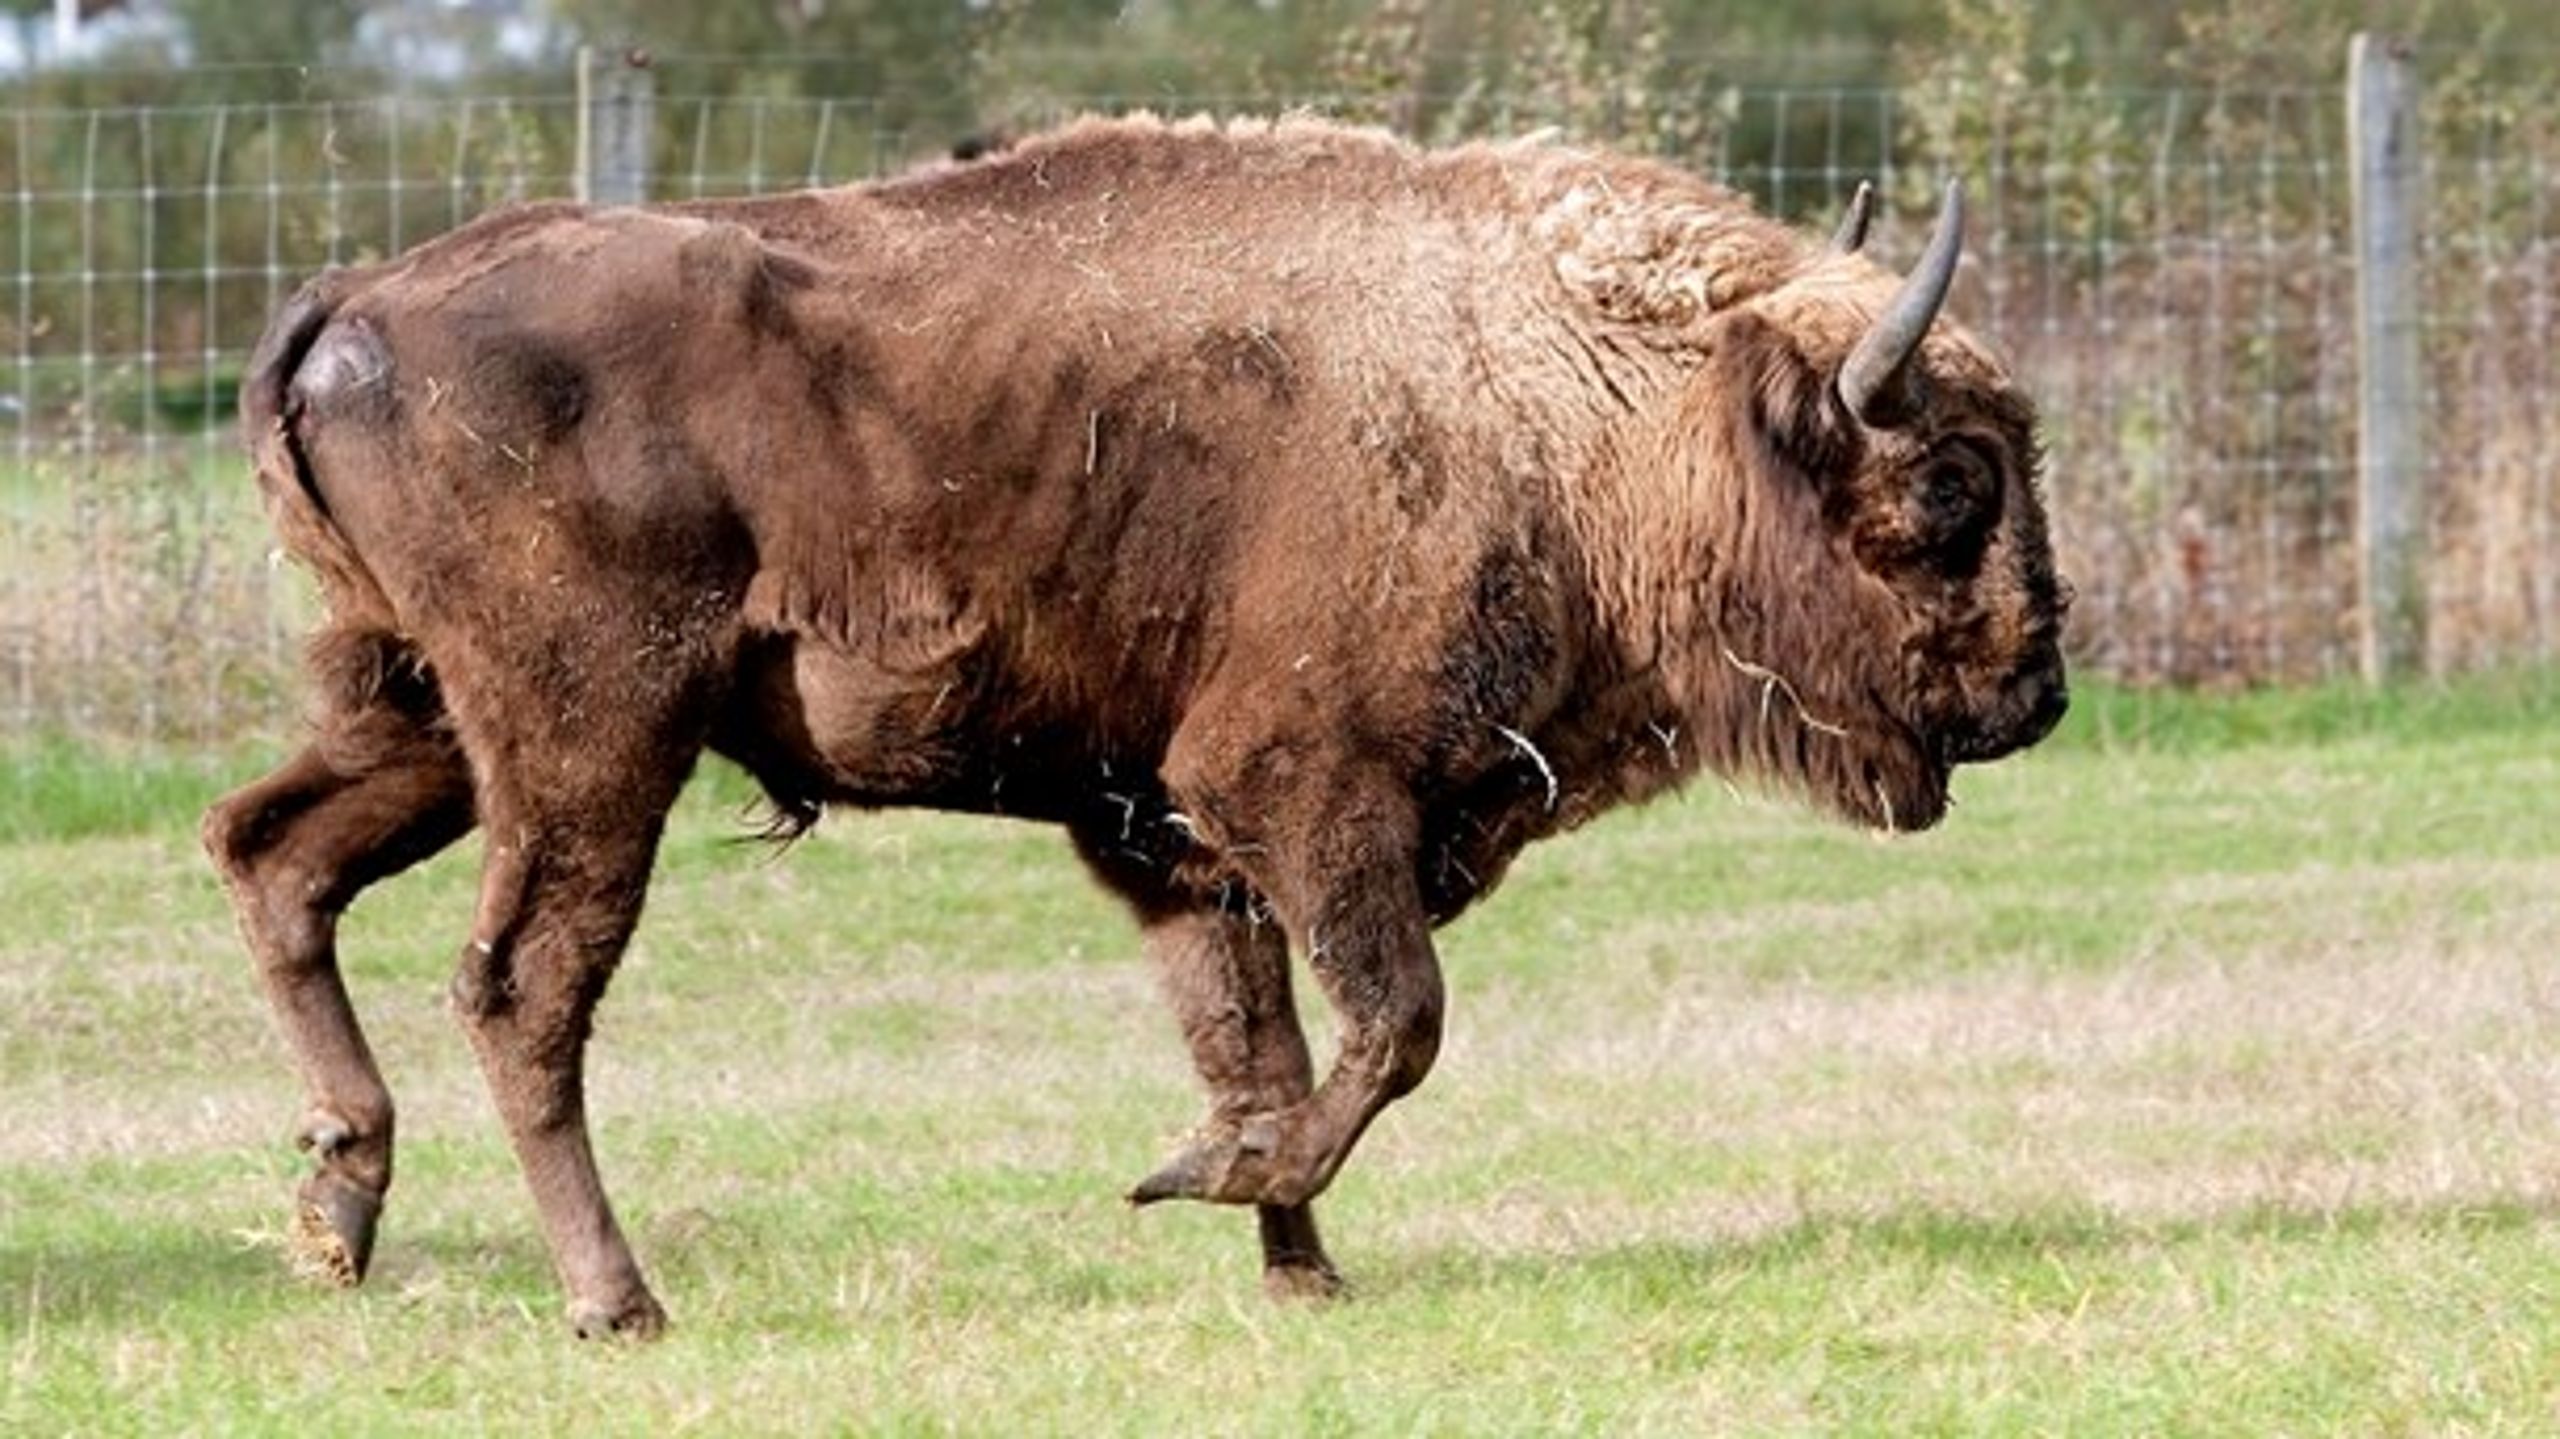 Ud over i skoven på Bornholm kan man se den europæiske bison to steder i landet hos henholdsvis Knuthenborg Safaripark og Randers Regnskov.&nbsp;